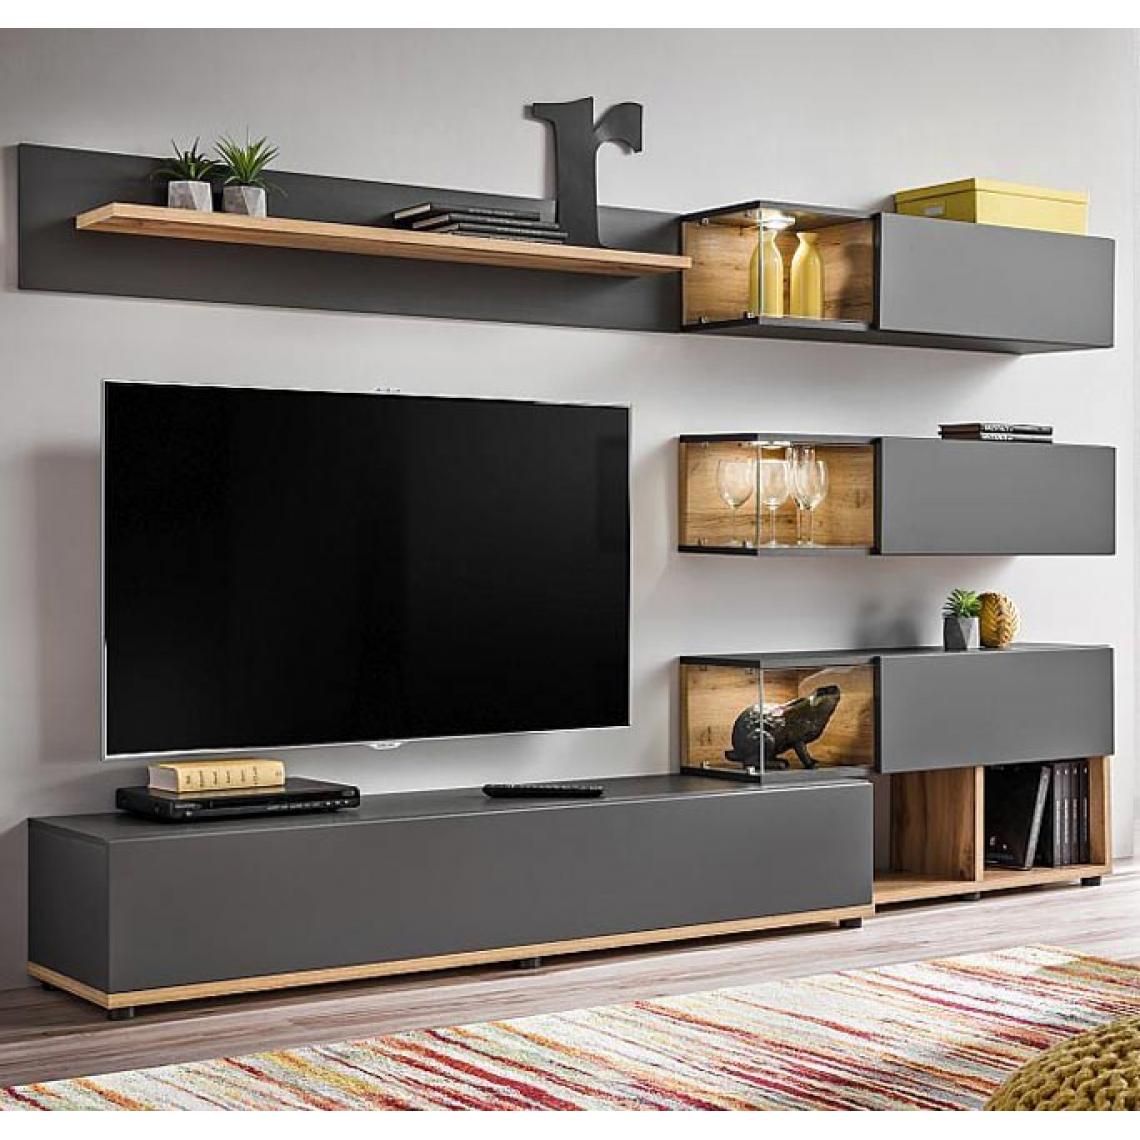 Design Ameublement - Meuble Mural TV modèle Odin couleur gris et chêne (2,4m) - Meubles TV, Hi-Fi